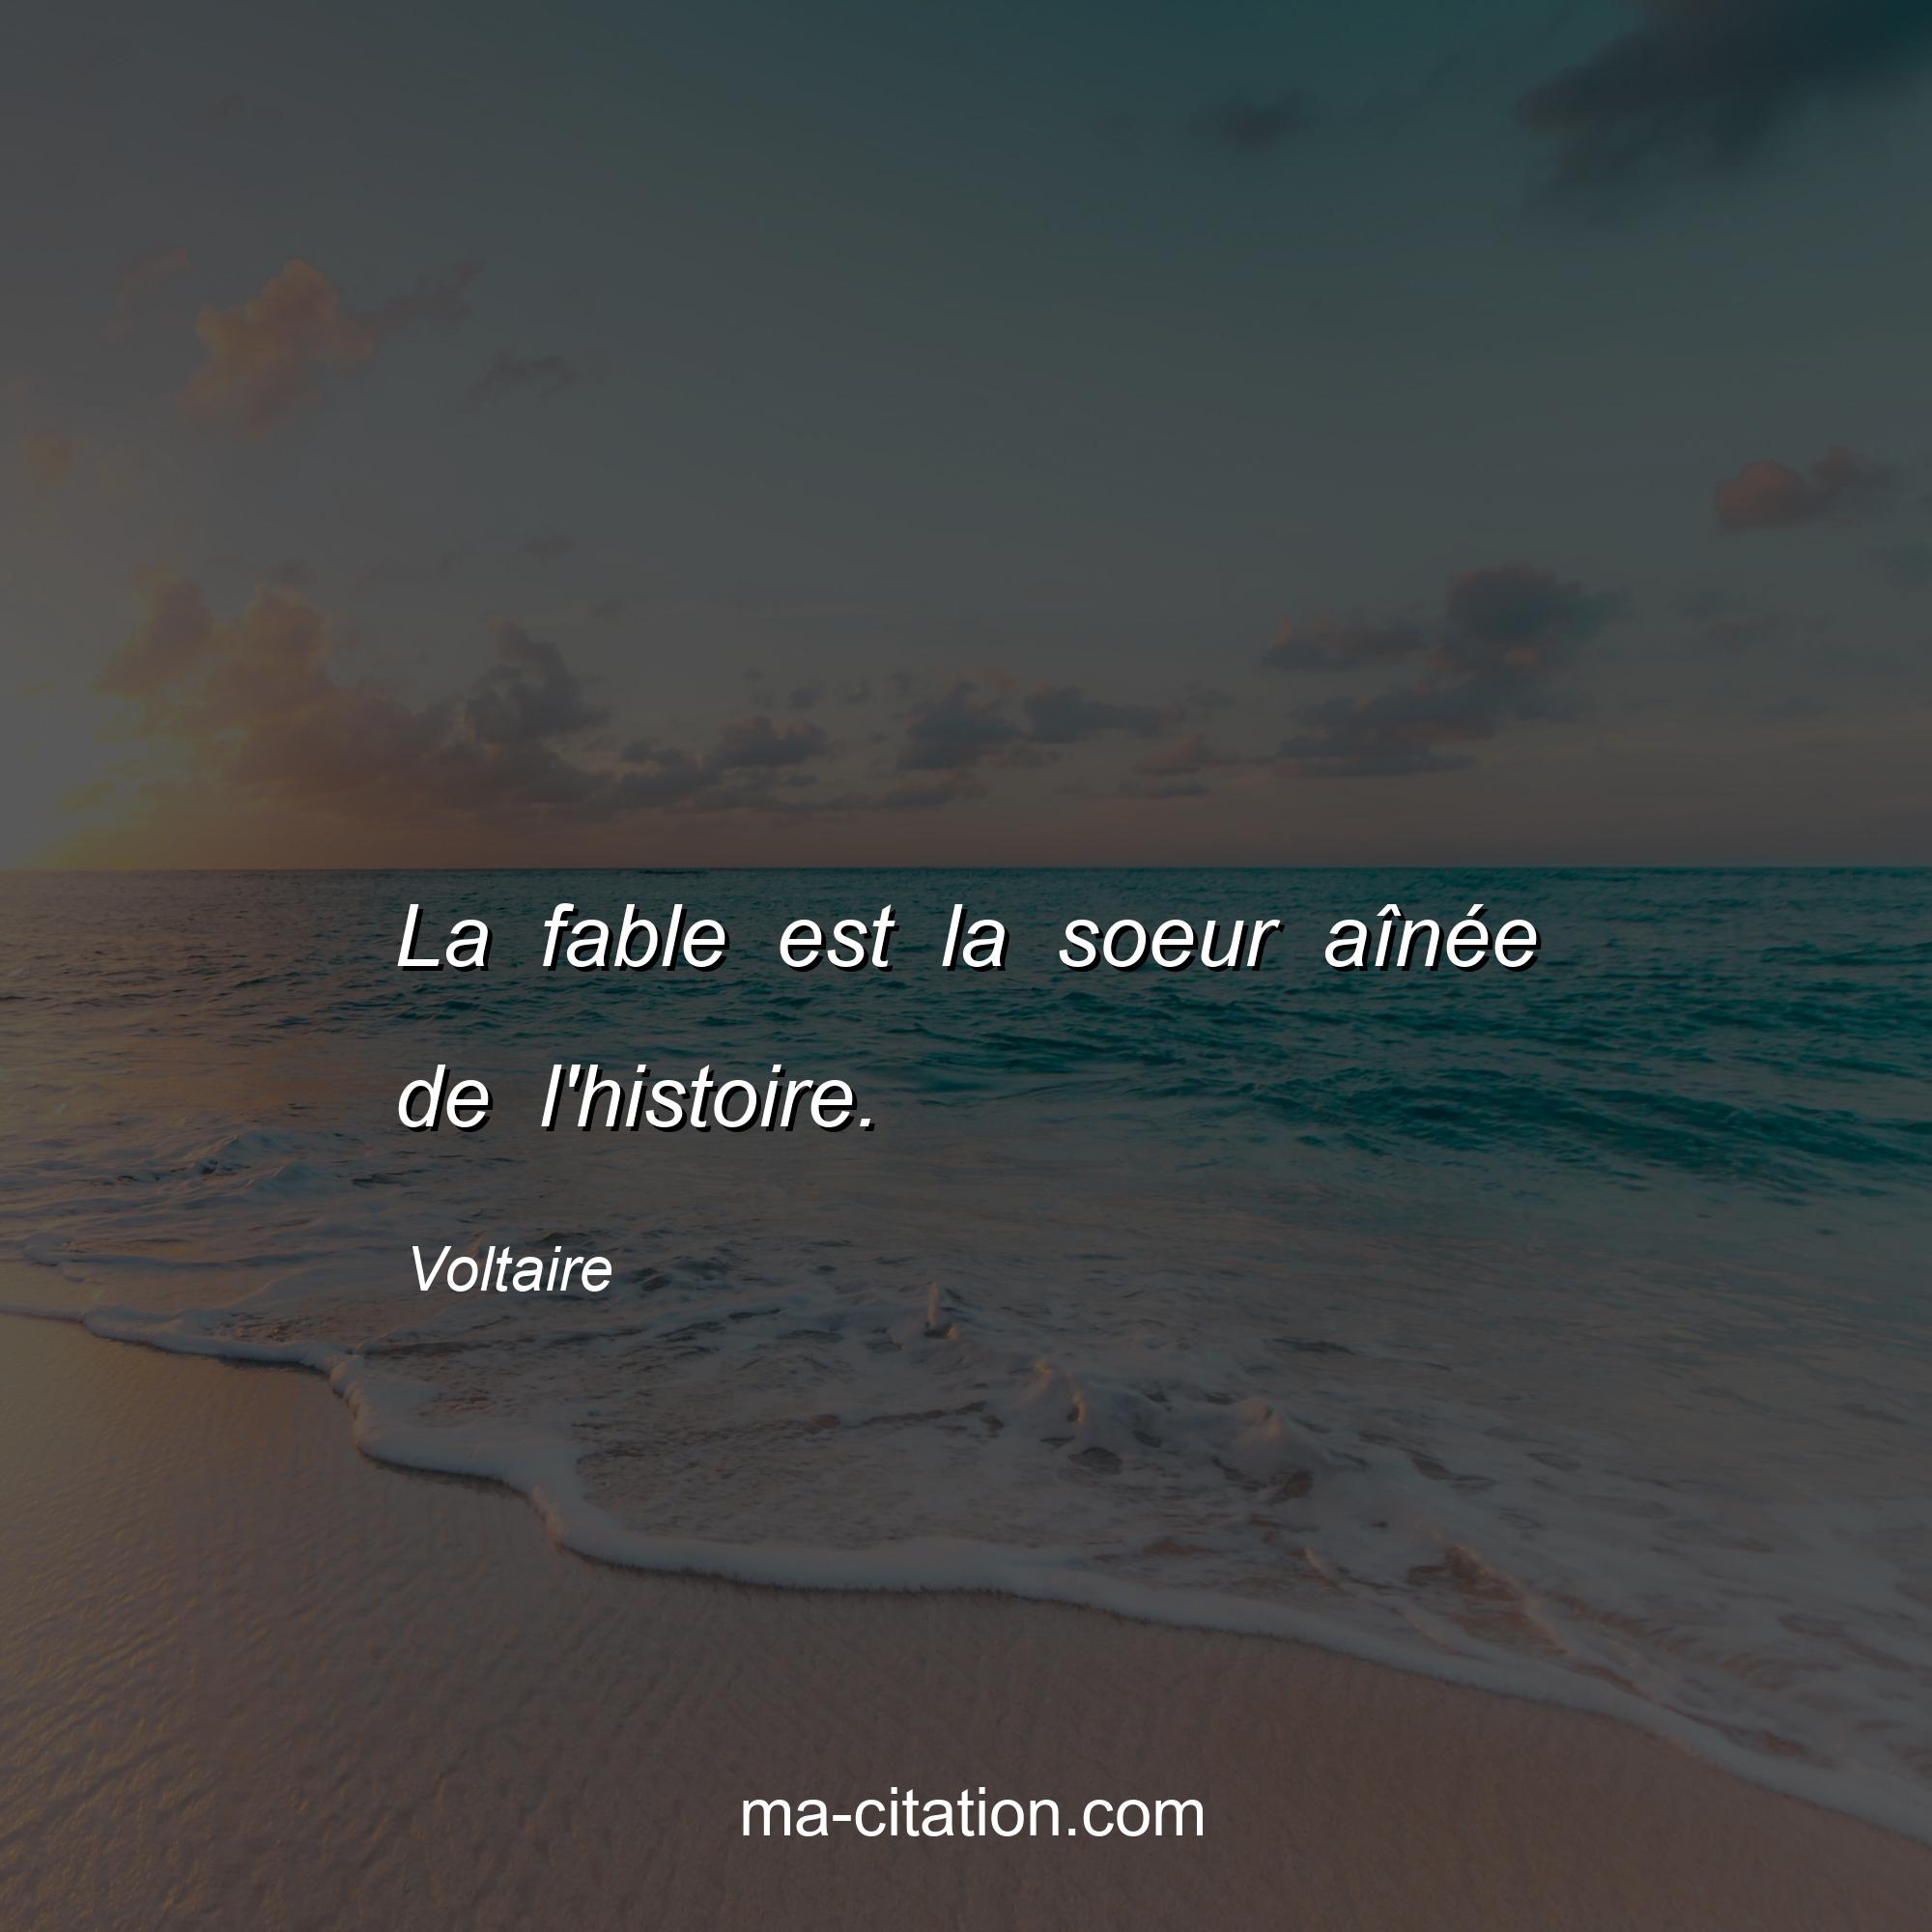 Voltaire : La fable est la soeur aînée de l'histoire.